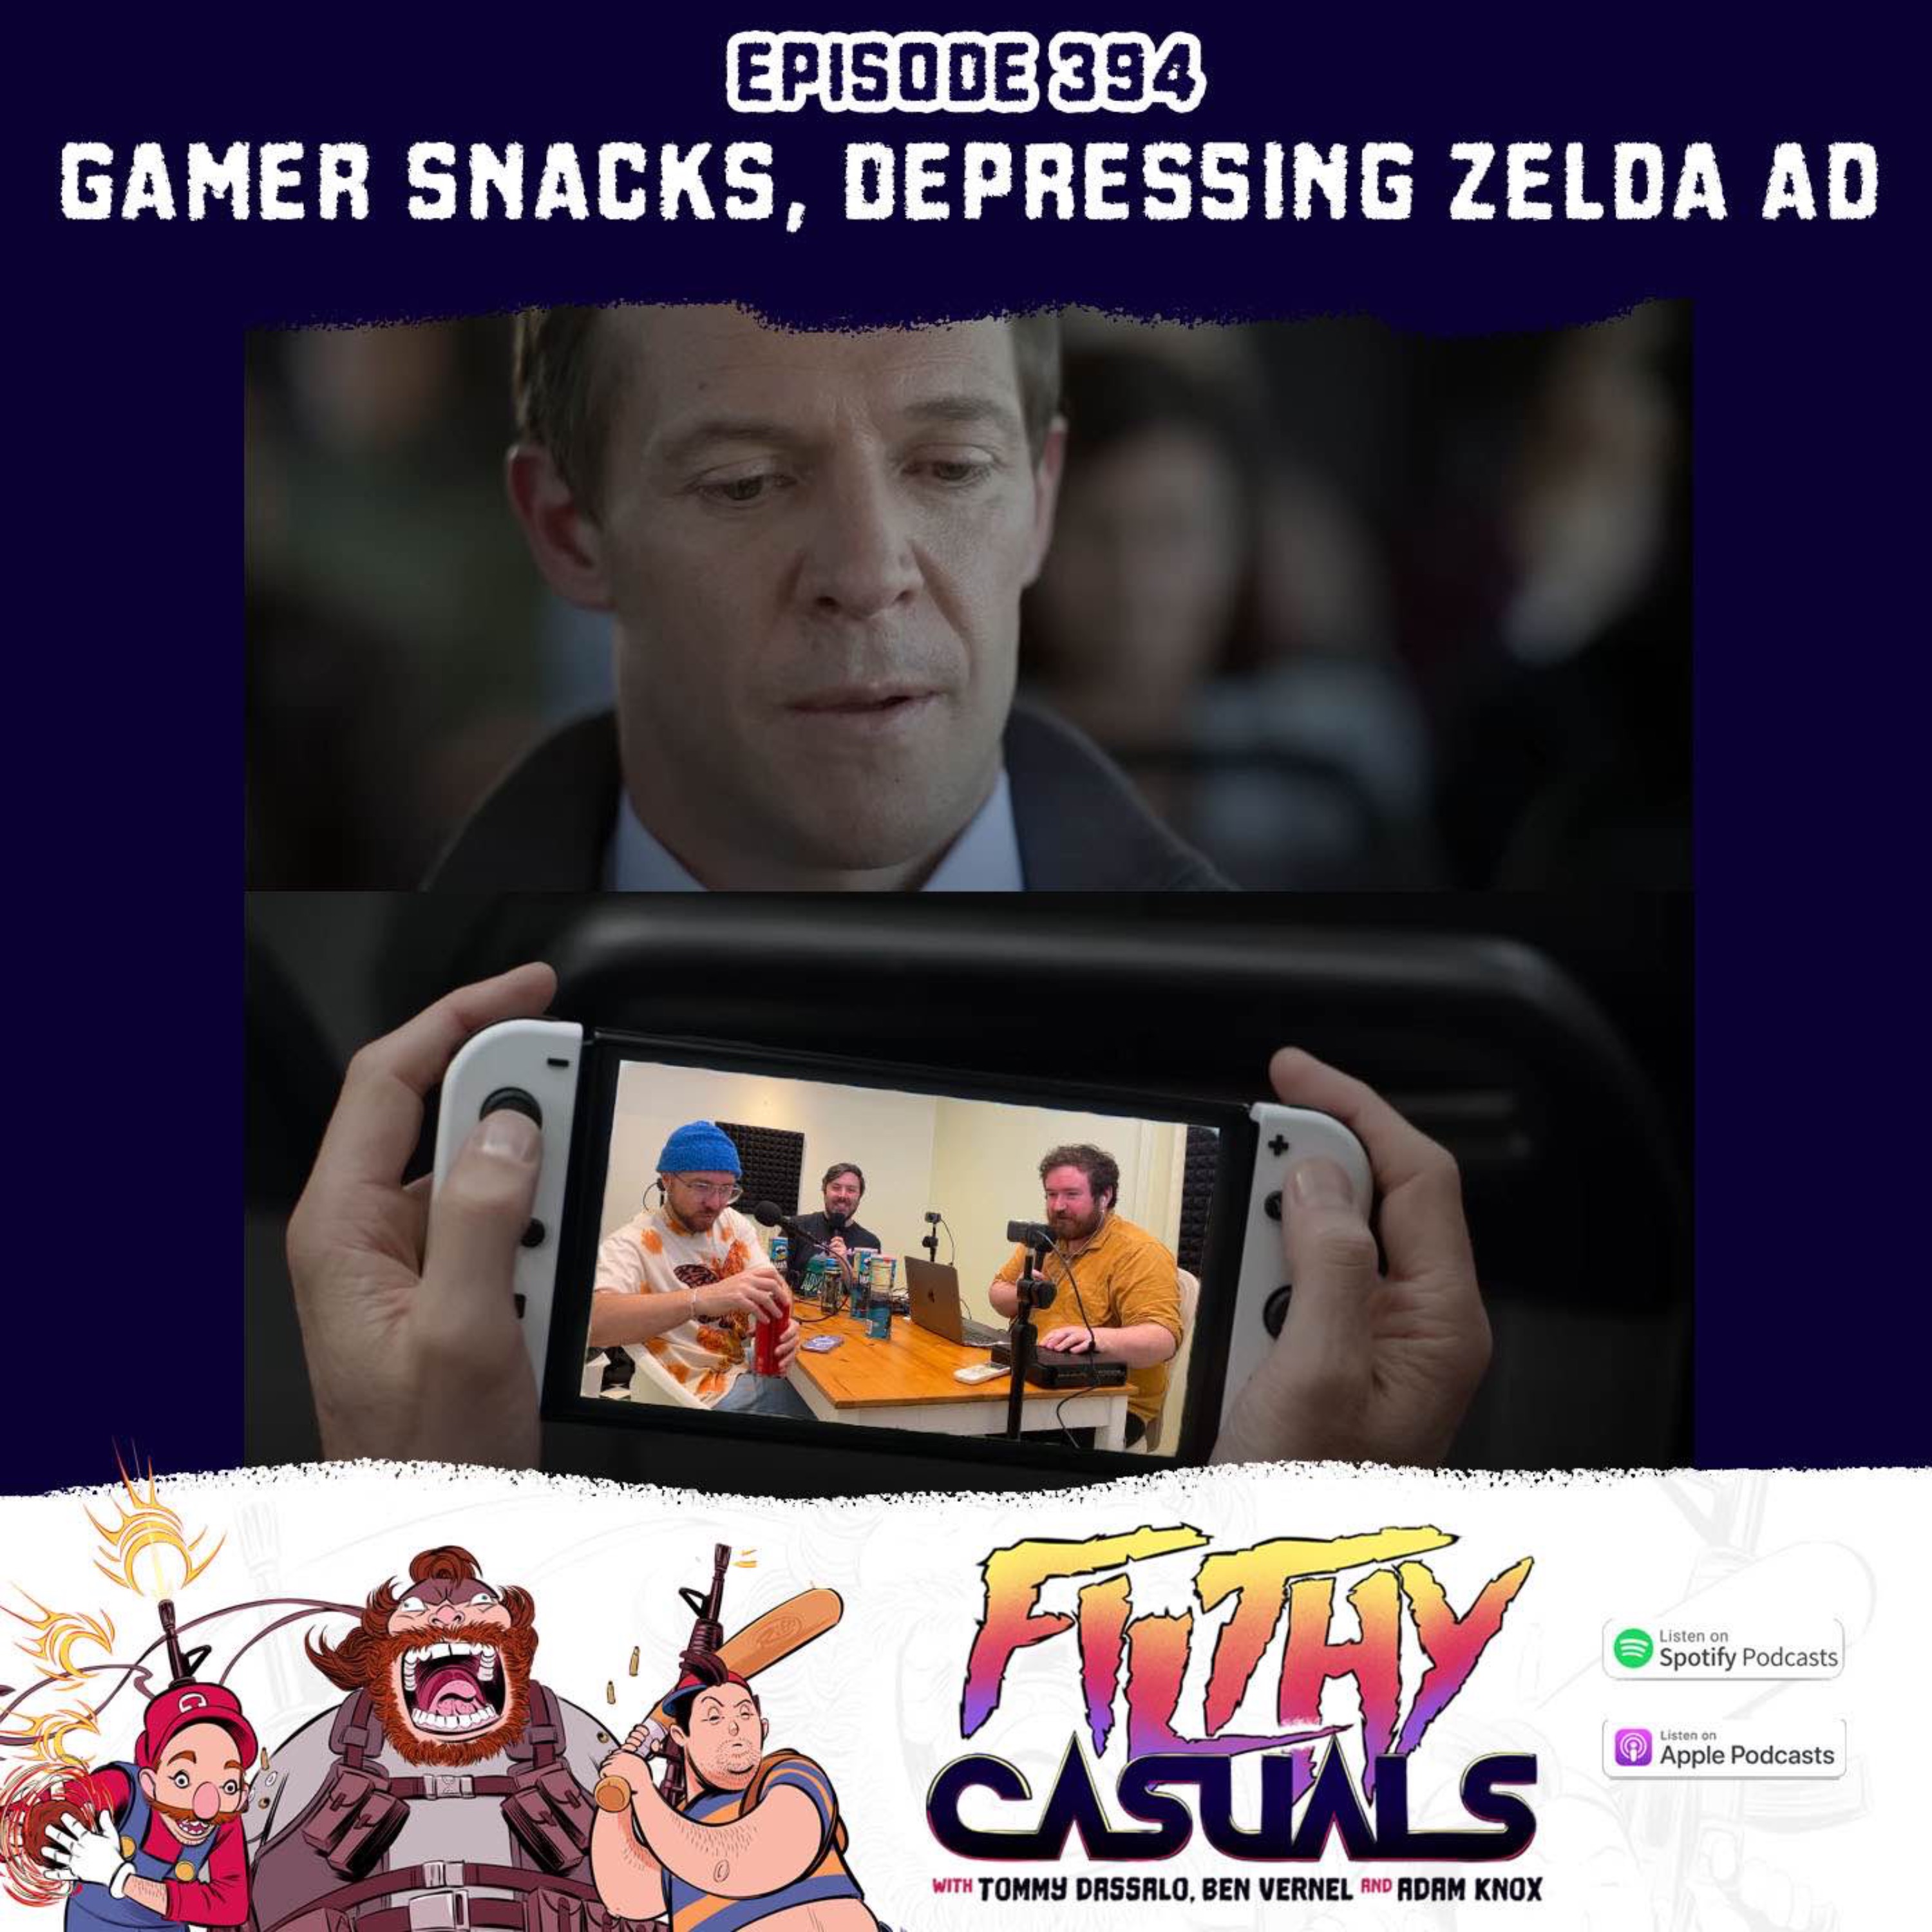 Episode 394: Gamer Snacks, Depressing Zelda Ad